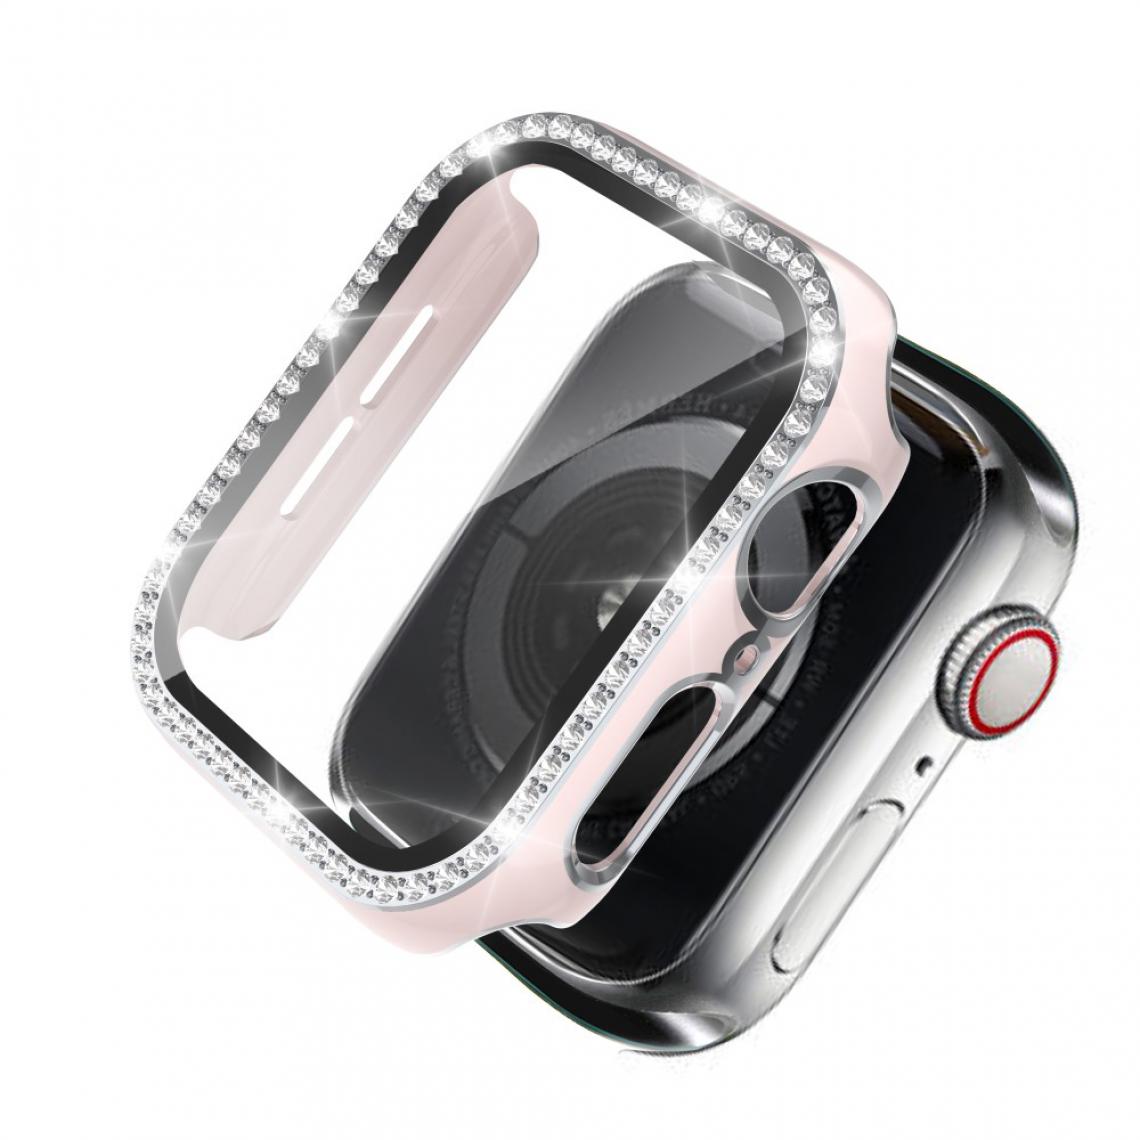 Other - Coque en TPU Strass en cristal de galvanoplastie bicolore Rose/Argent pour votre Apple Watch 1/2/3 42mm - Accessoires bracelet connecté